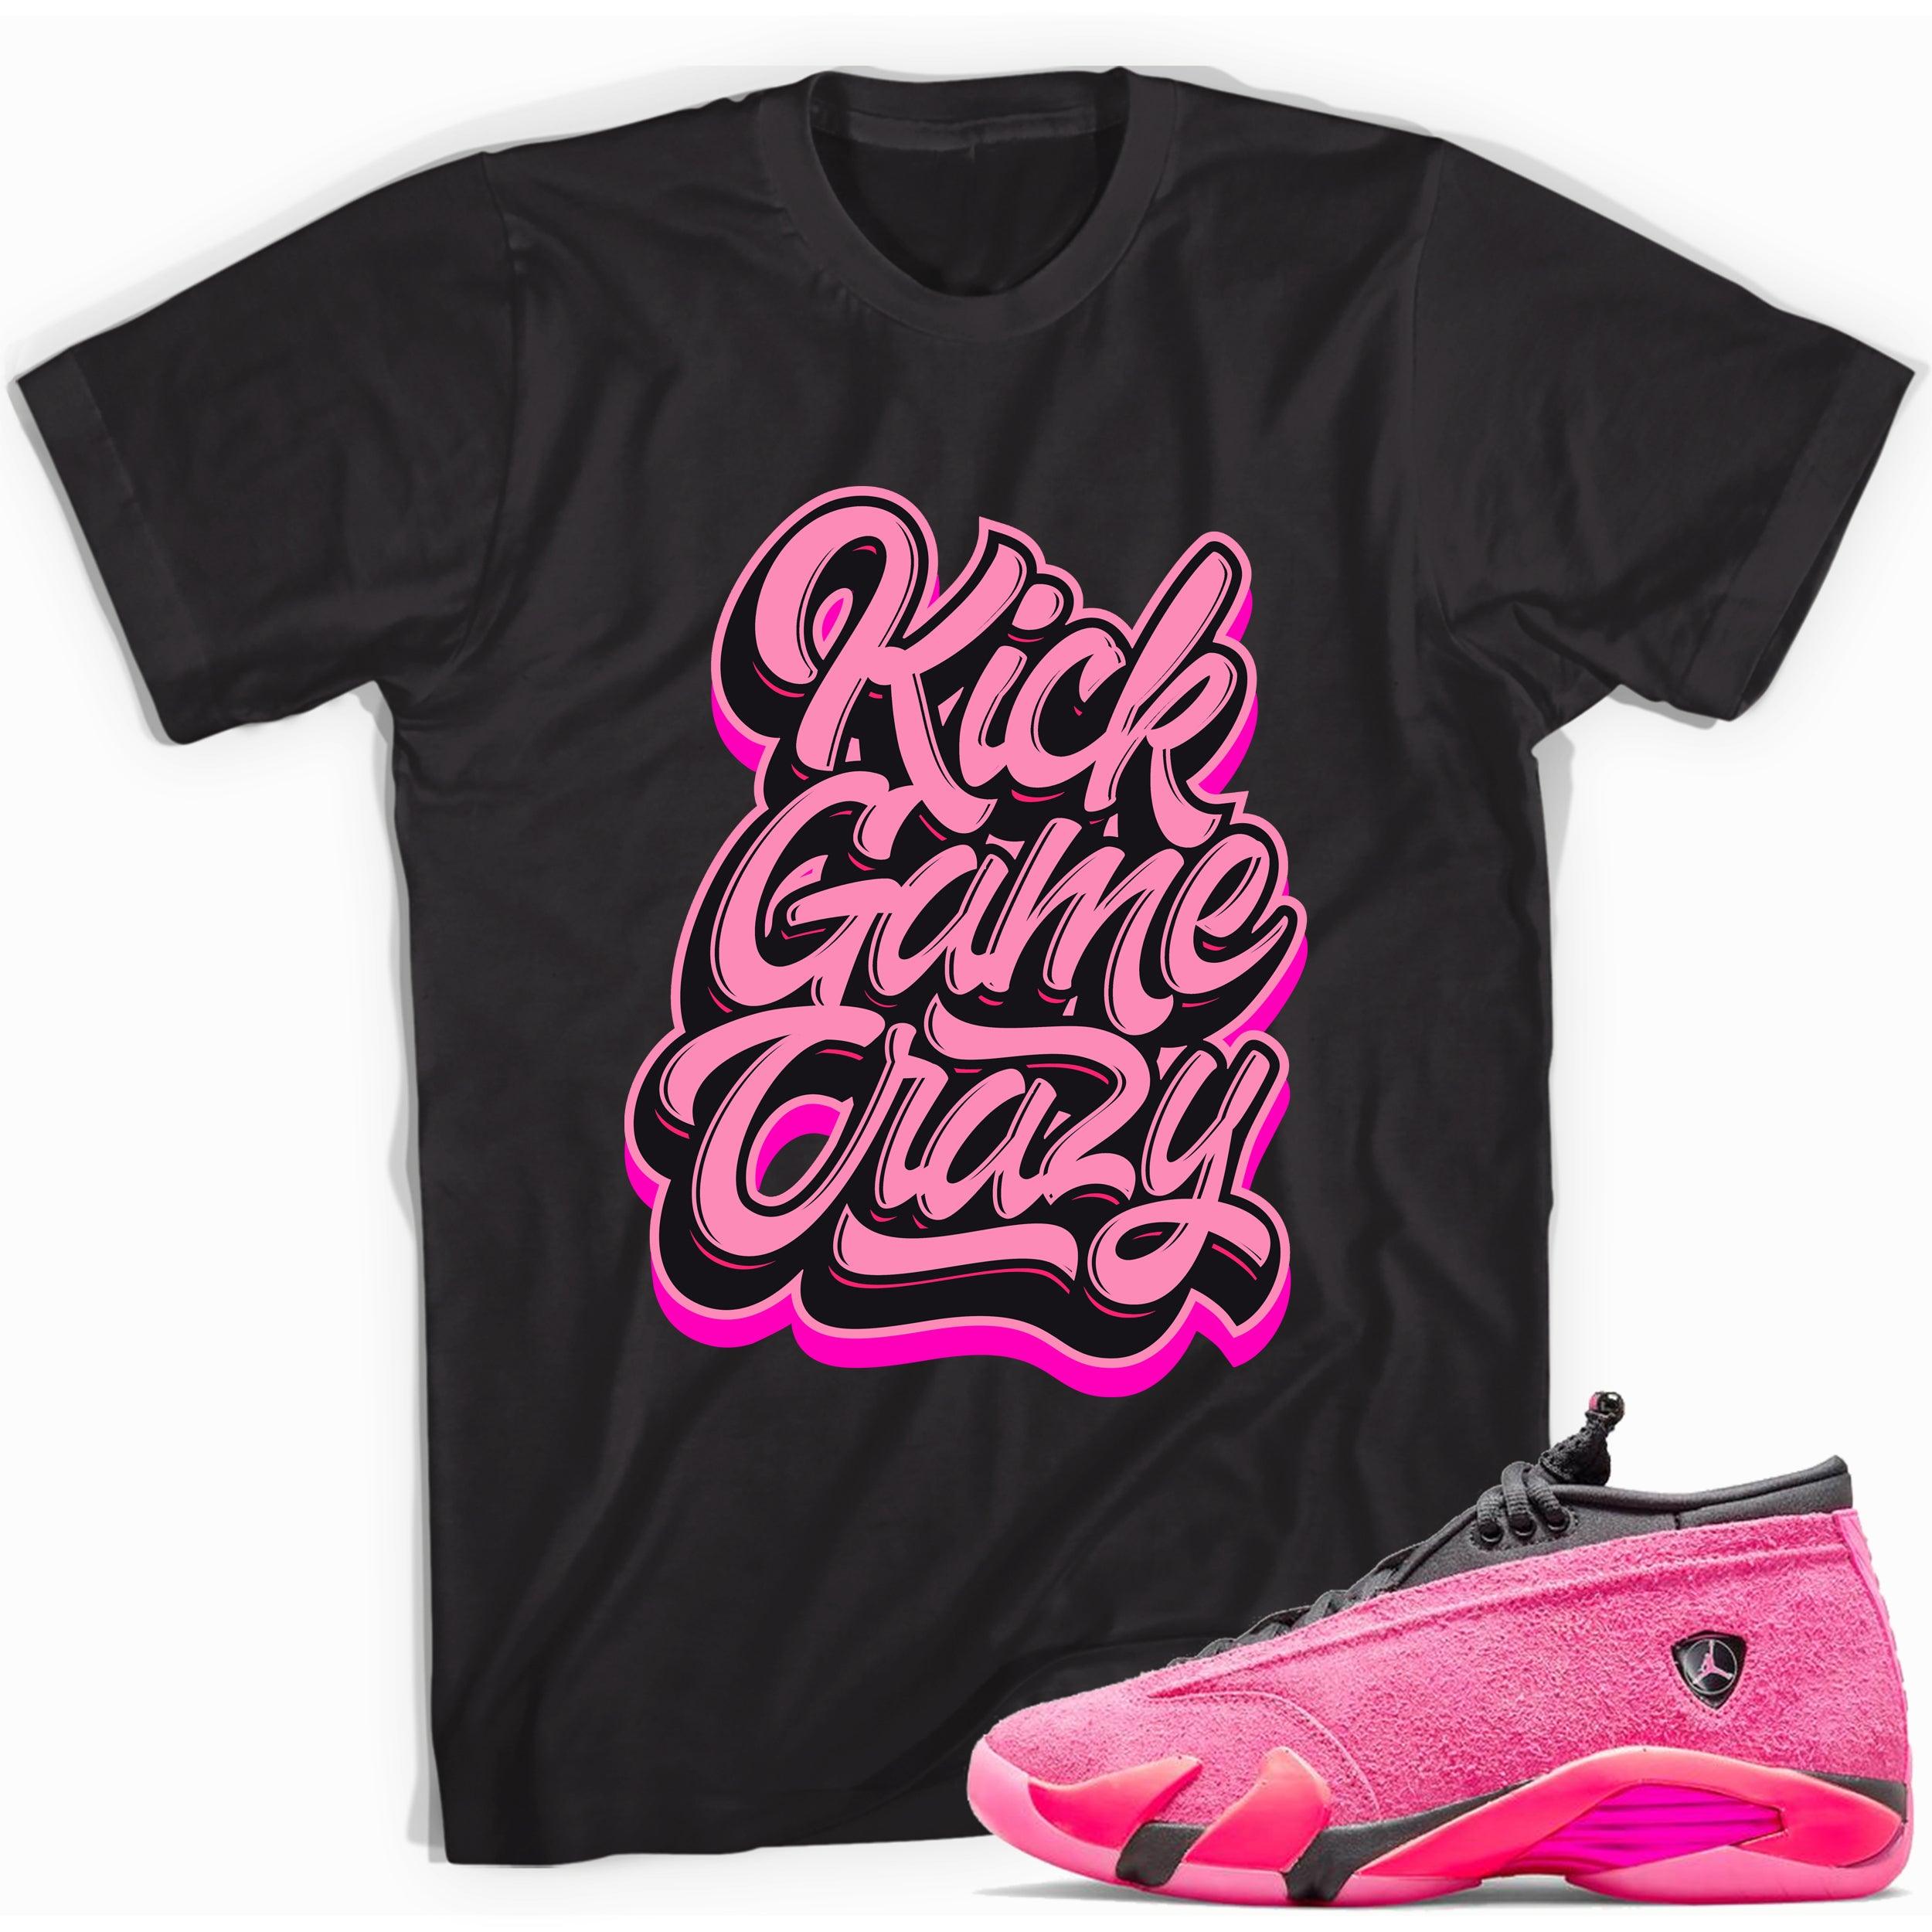 Black Kick Game Crazy Shirt AJ 14 Low Shocking Pink photo